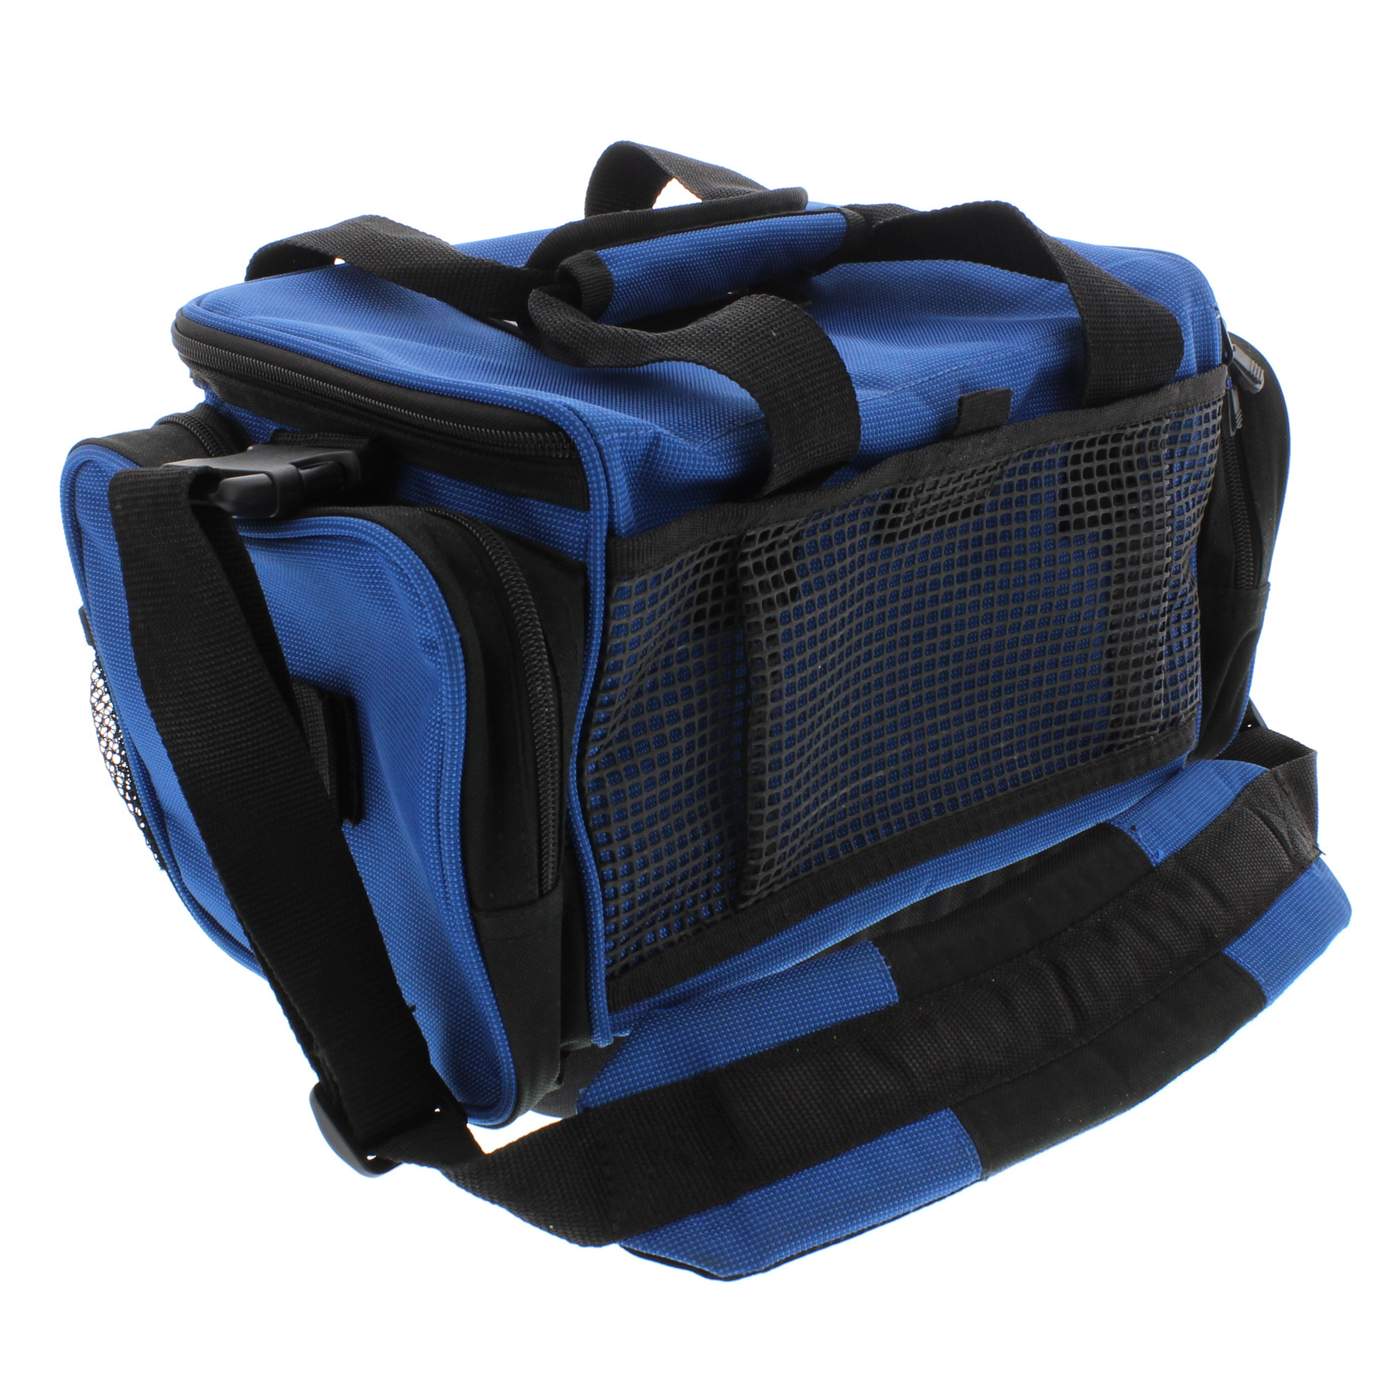 Okuma fishing tackle backpack - Tackle Bags & Boxes - Narangba